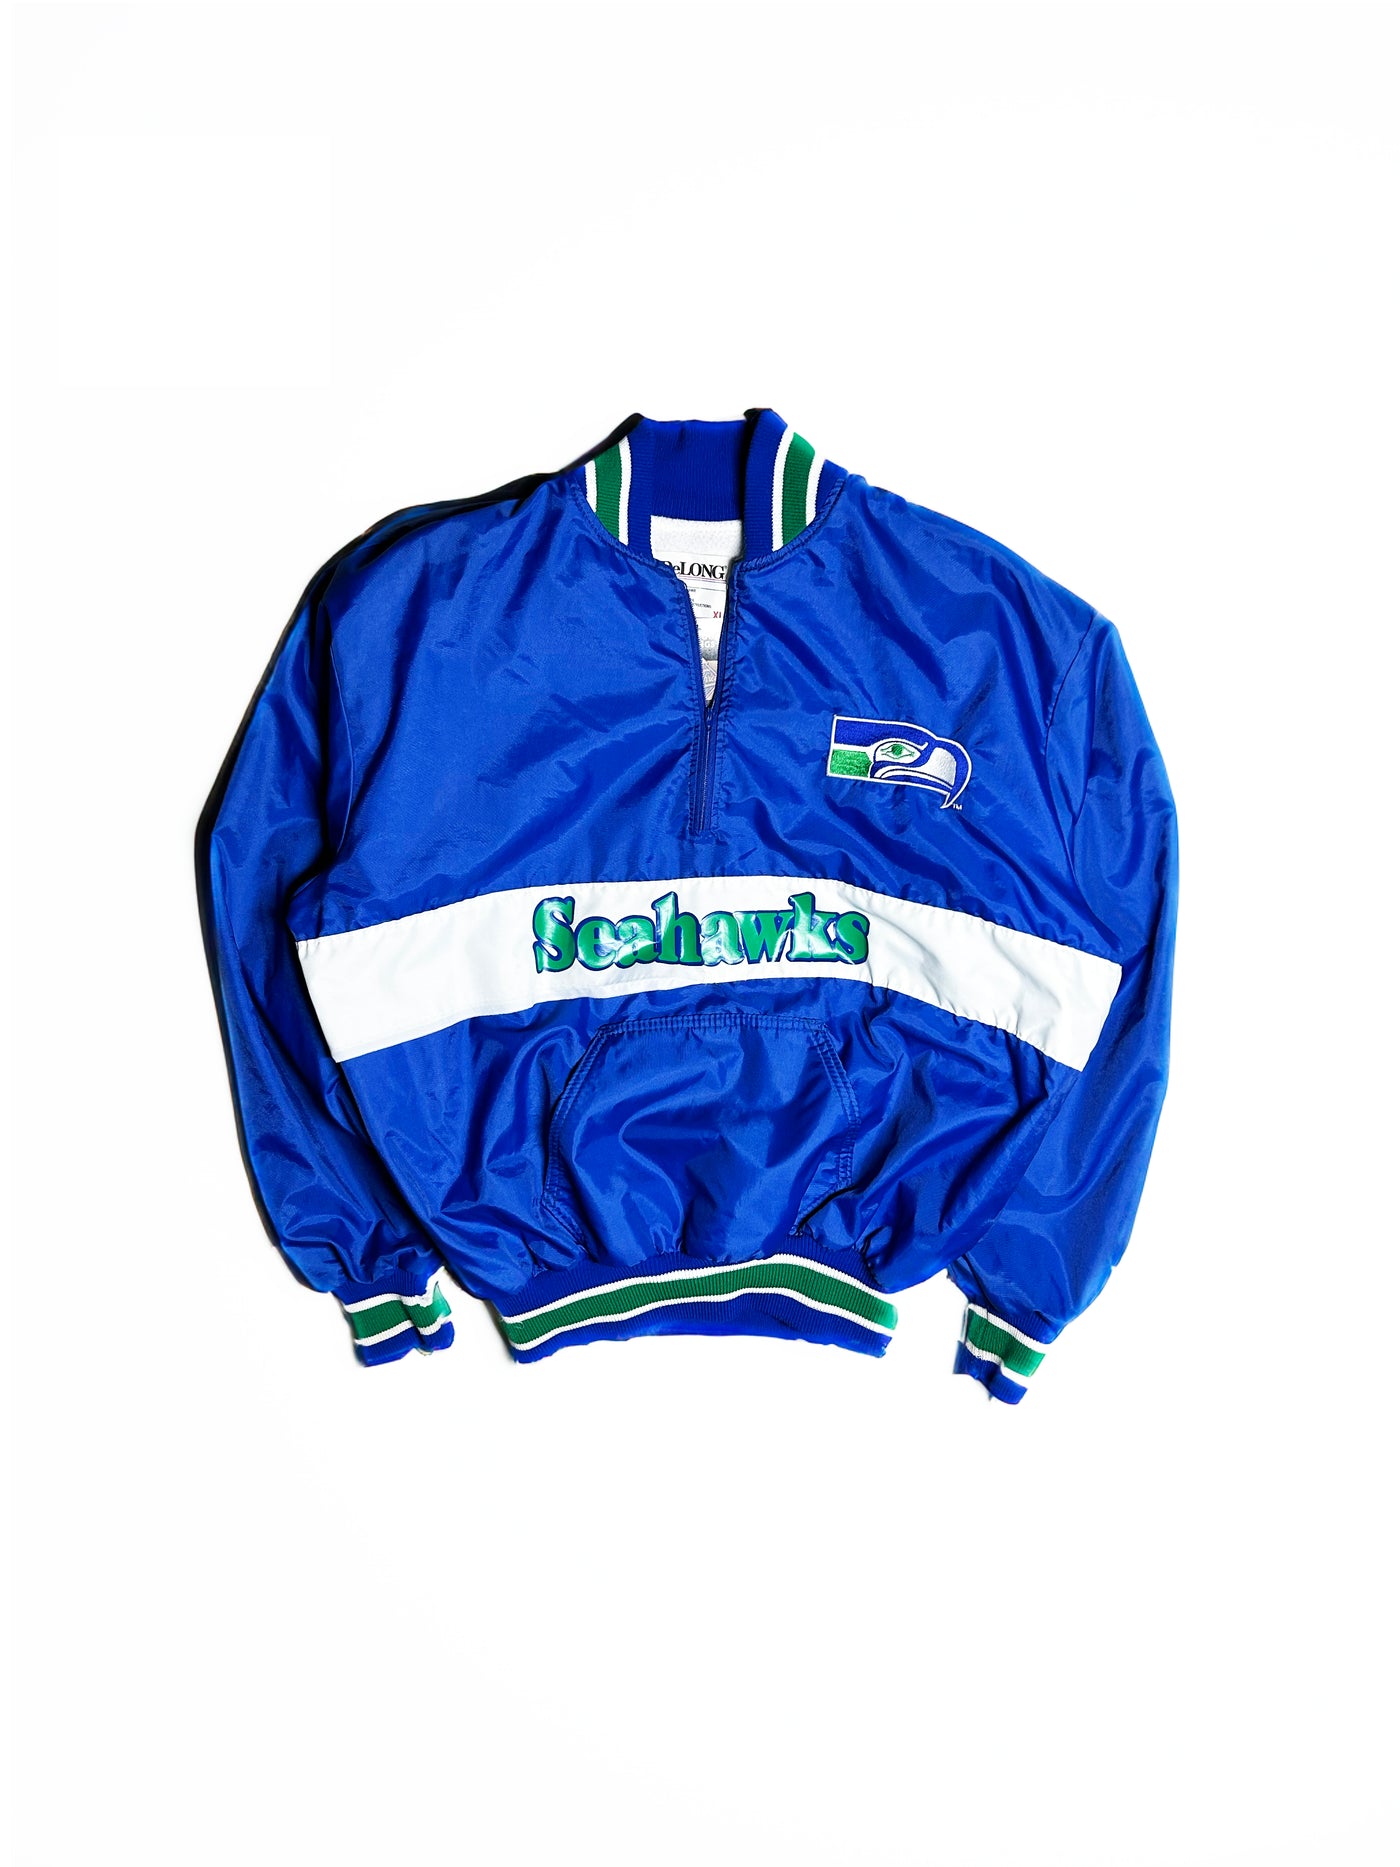 Vintage 80s Seattle Seahawks Jacket